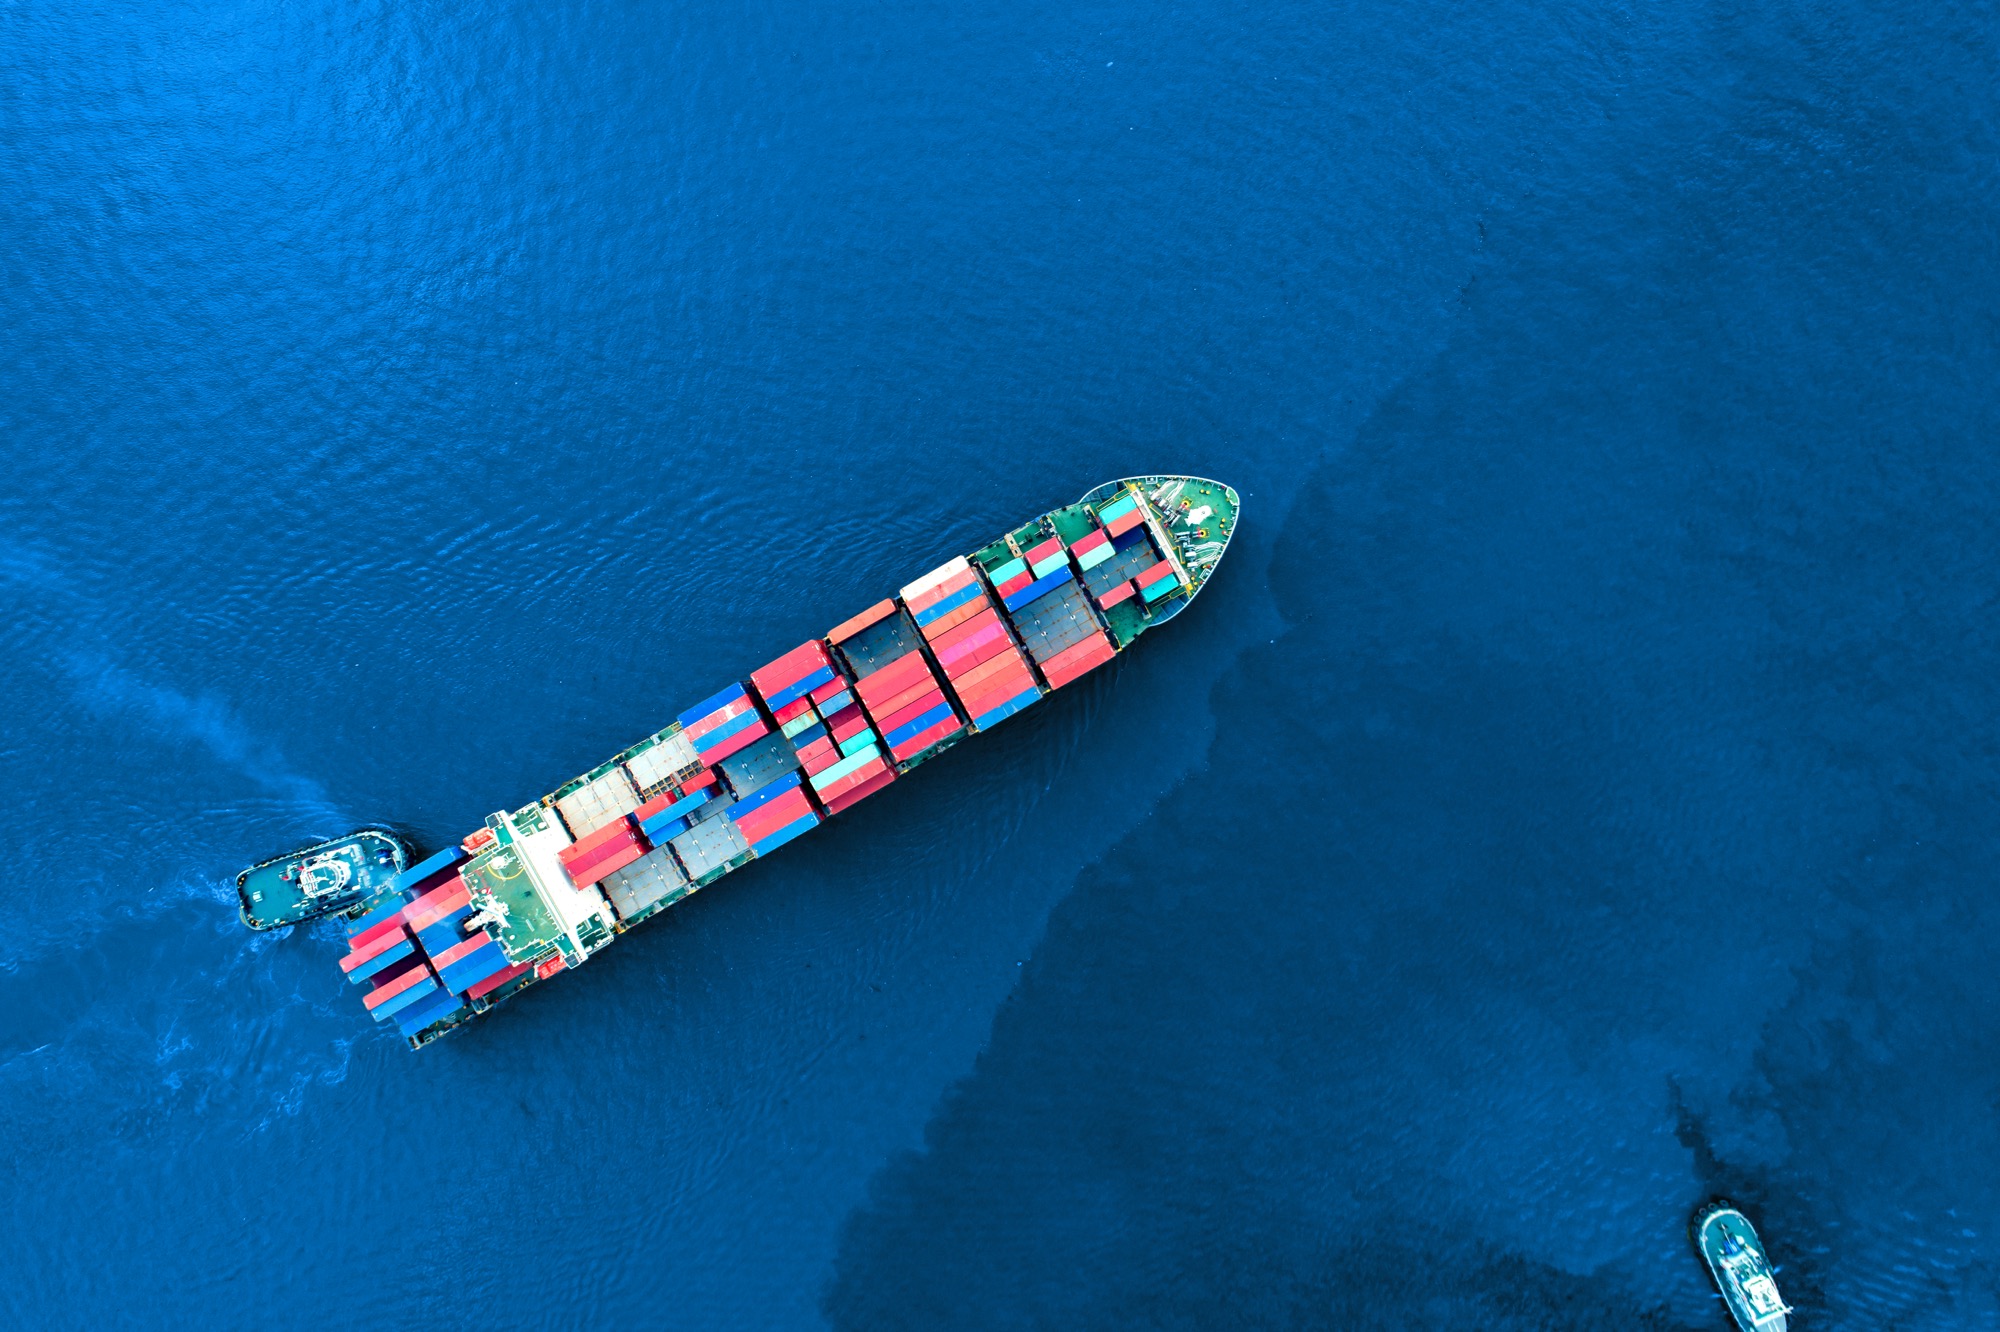 Sécurité des navires marchands pour les voyages en cargo en Europe